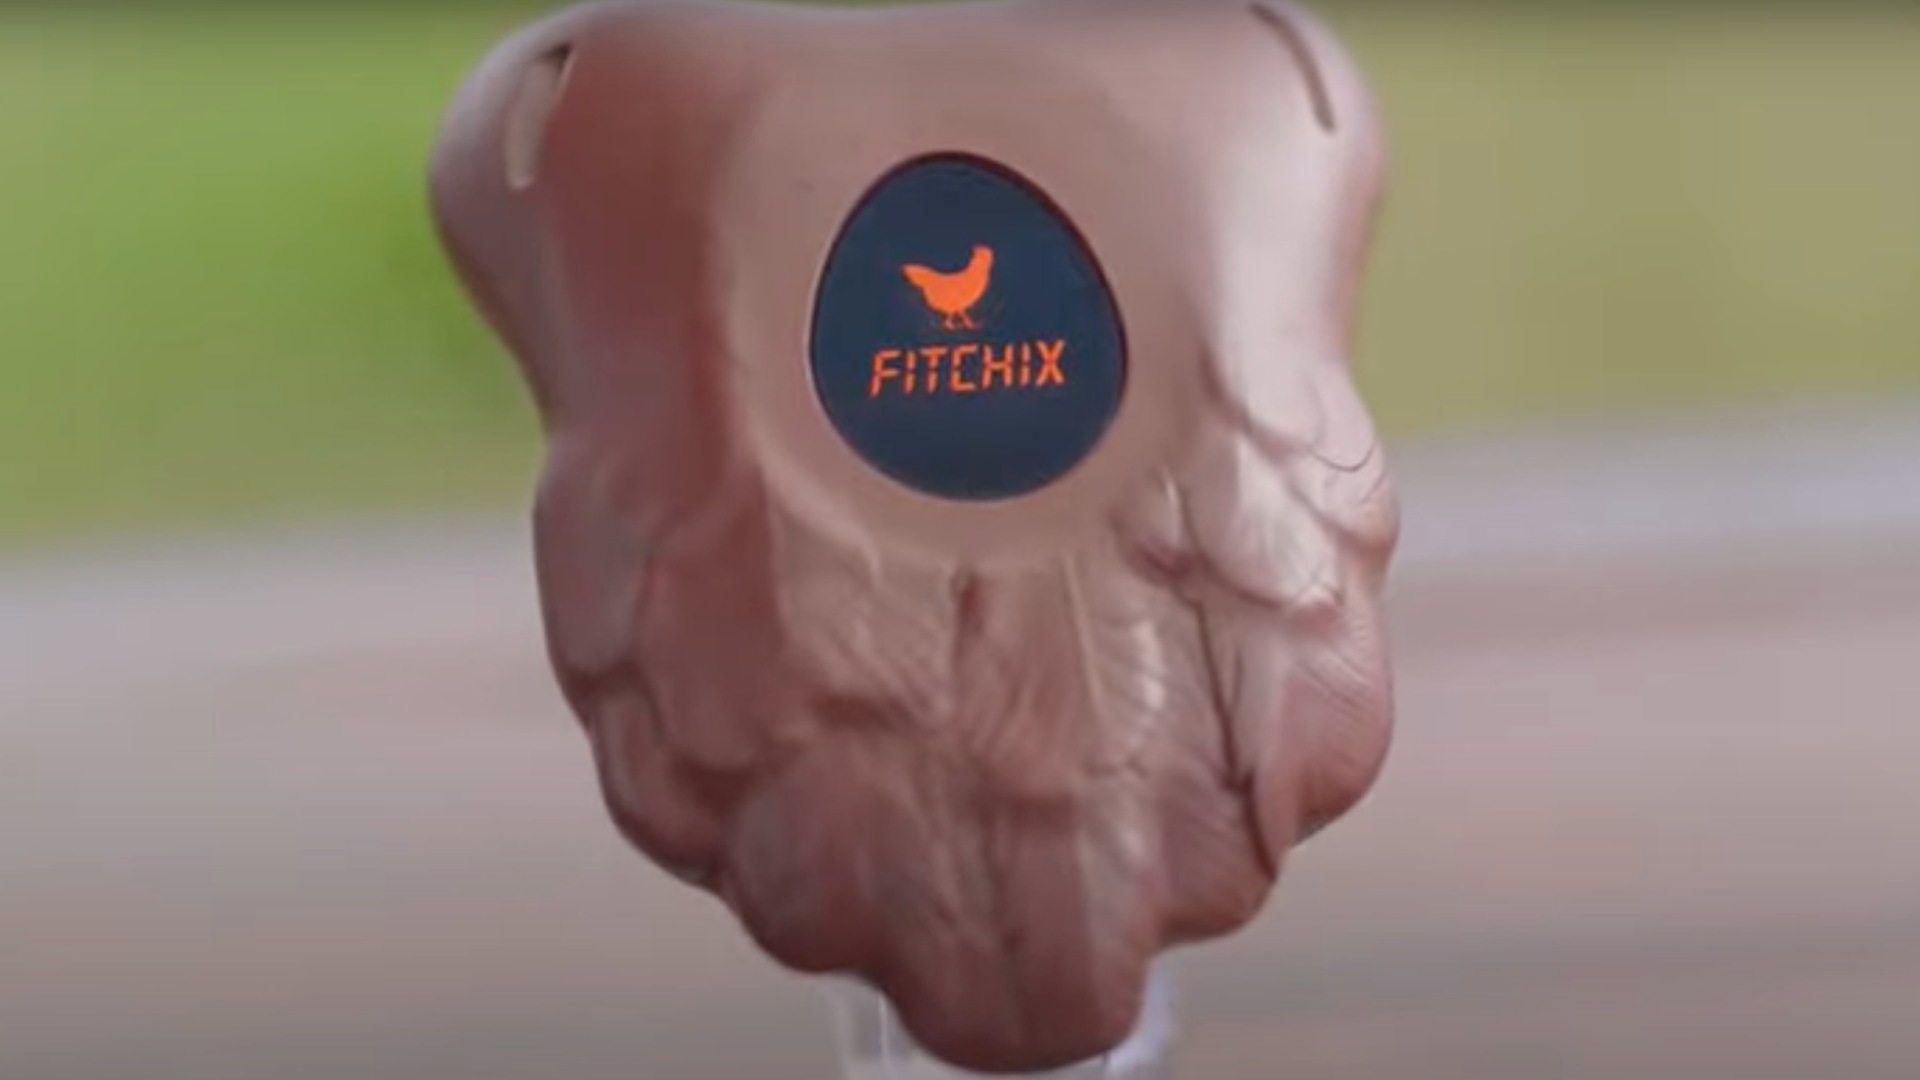 Una imagen del dispositivo Fitchix